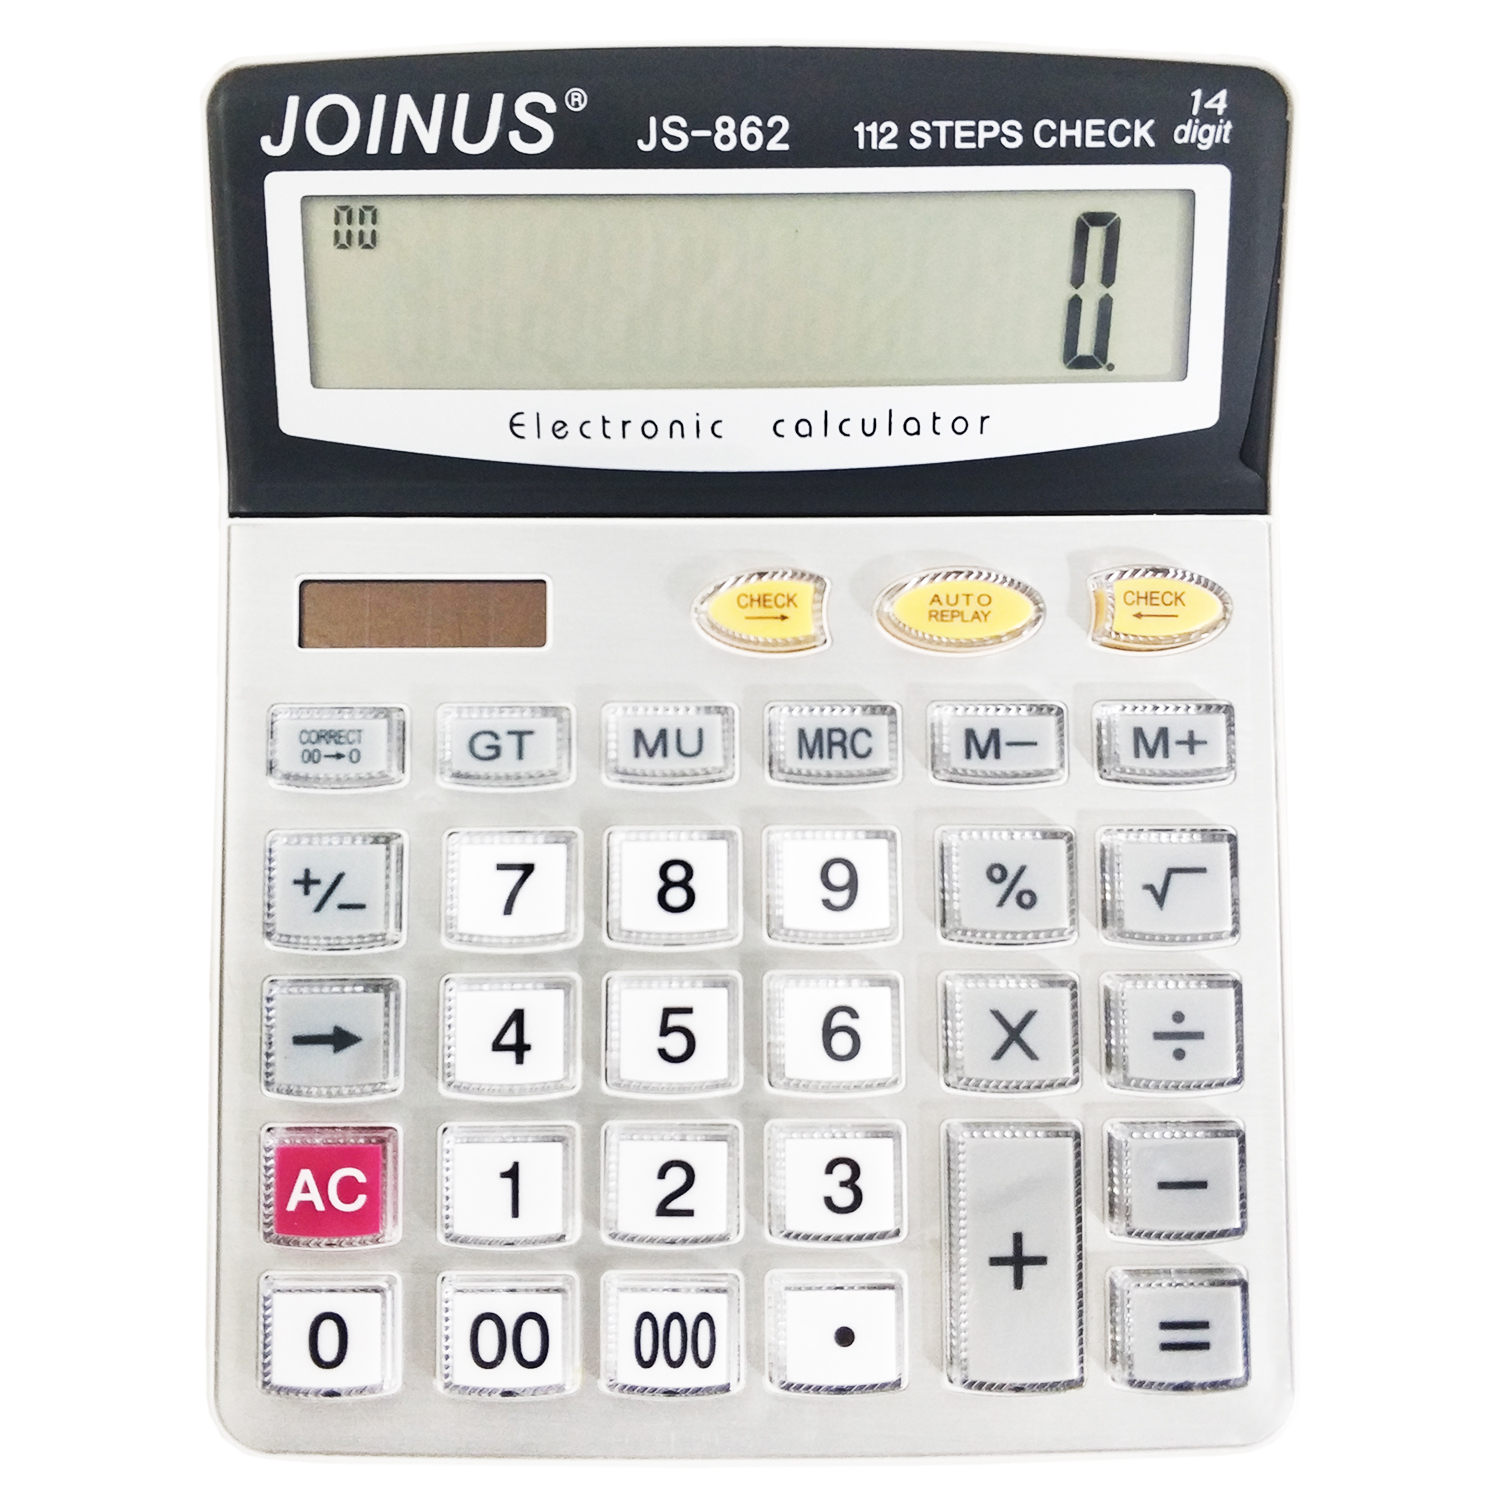 نقد و بررسی ماشین حساب جوینوس مدل JS-862 توسط خریداران